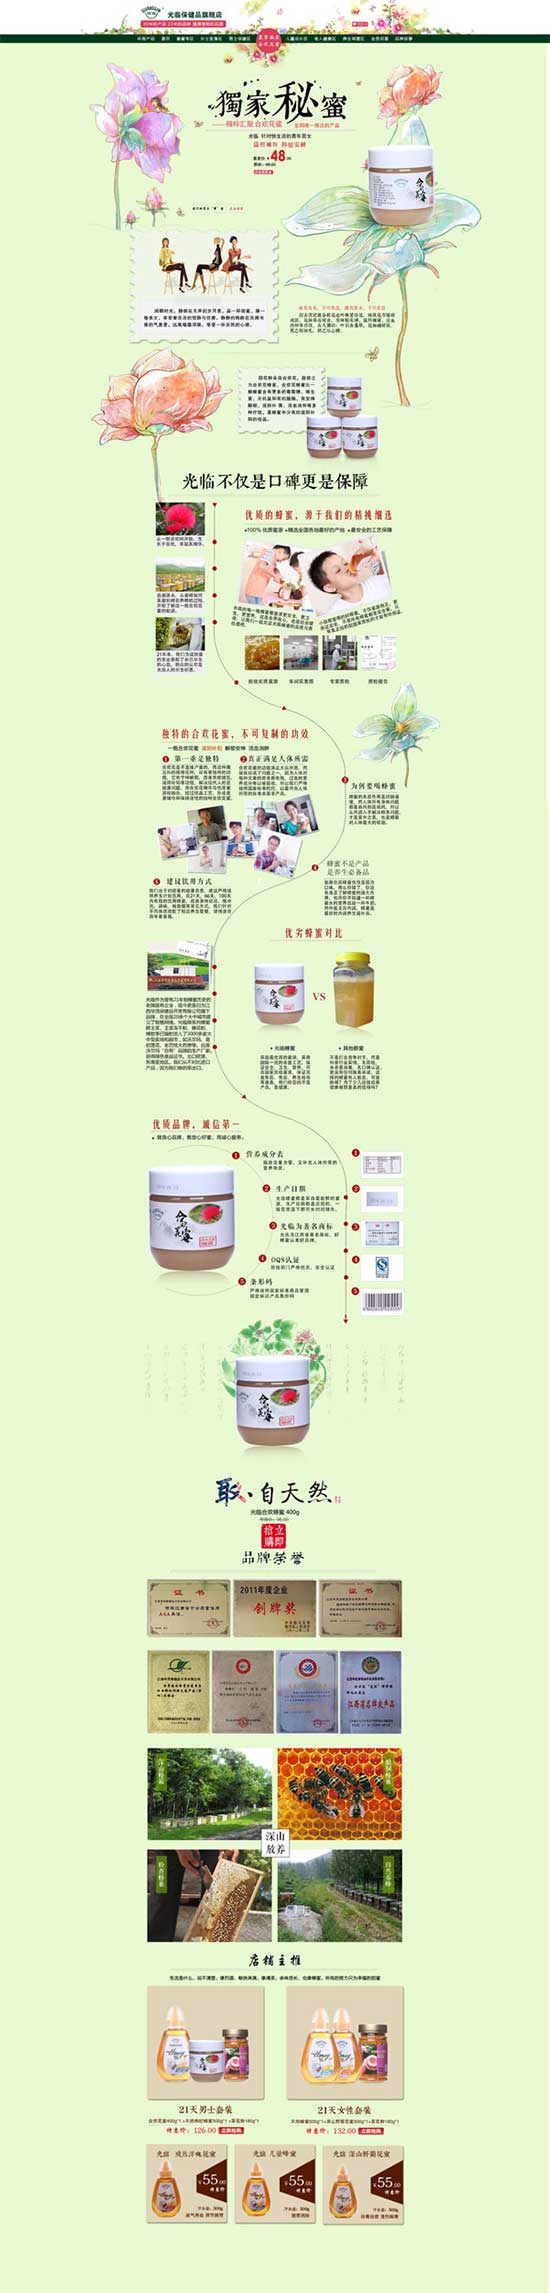 Taobao cibo salute negozio web design psd materiale